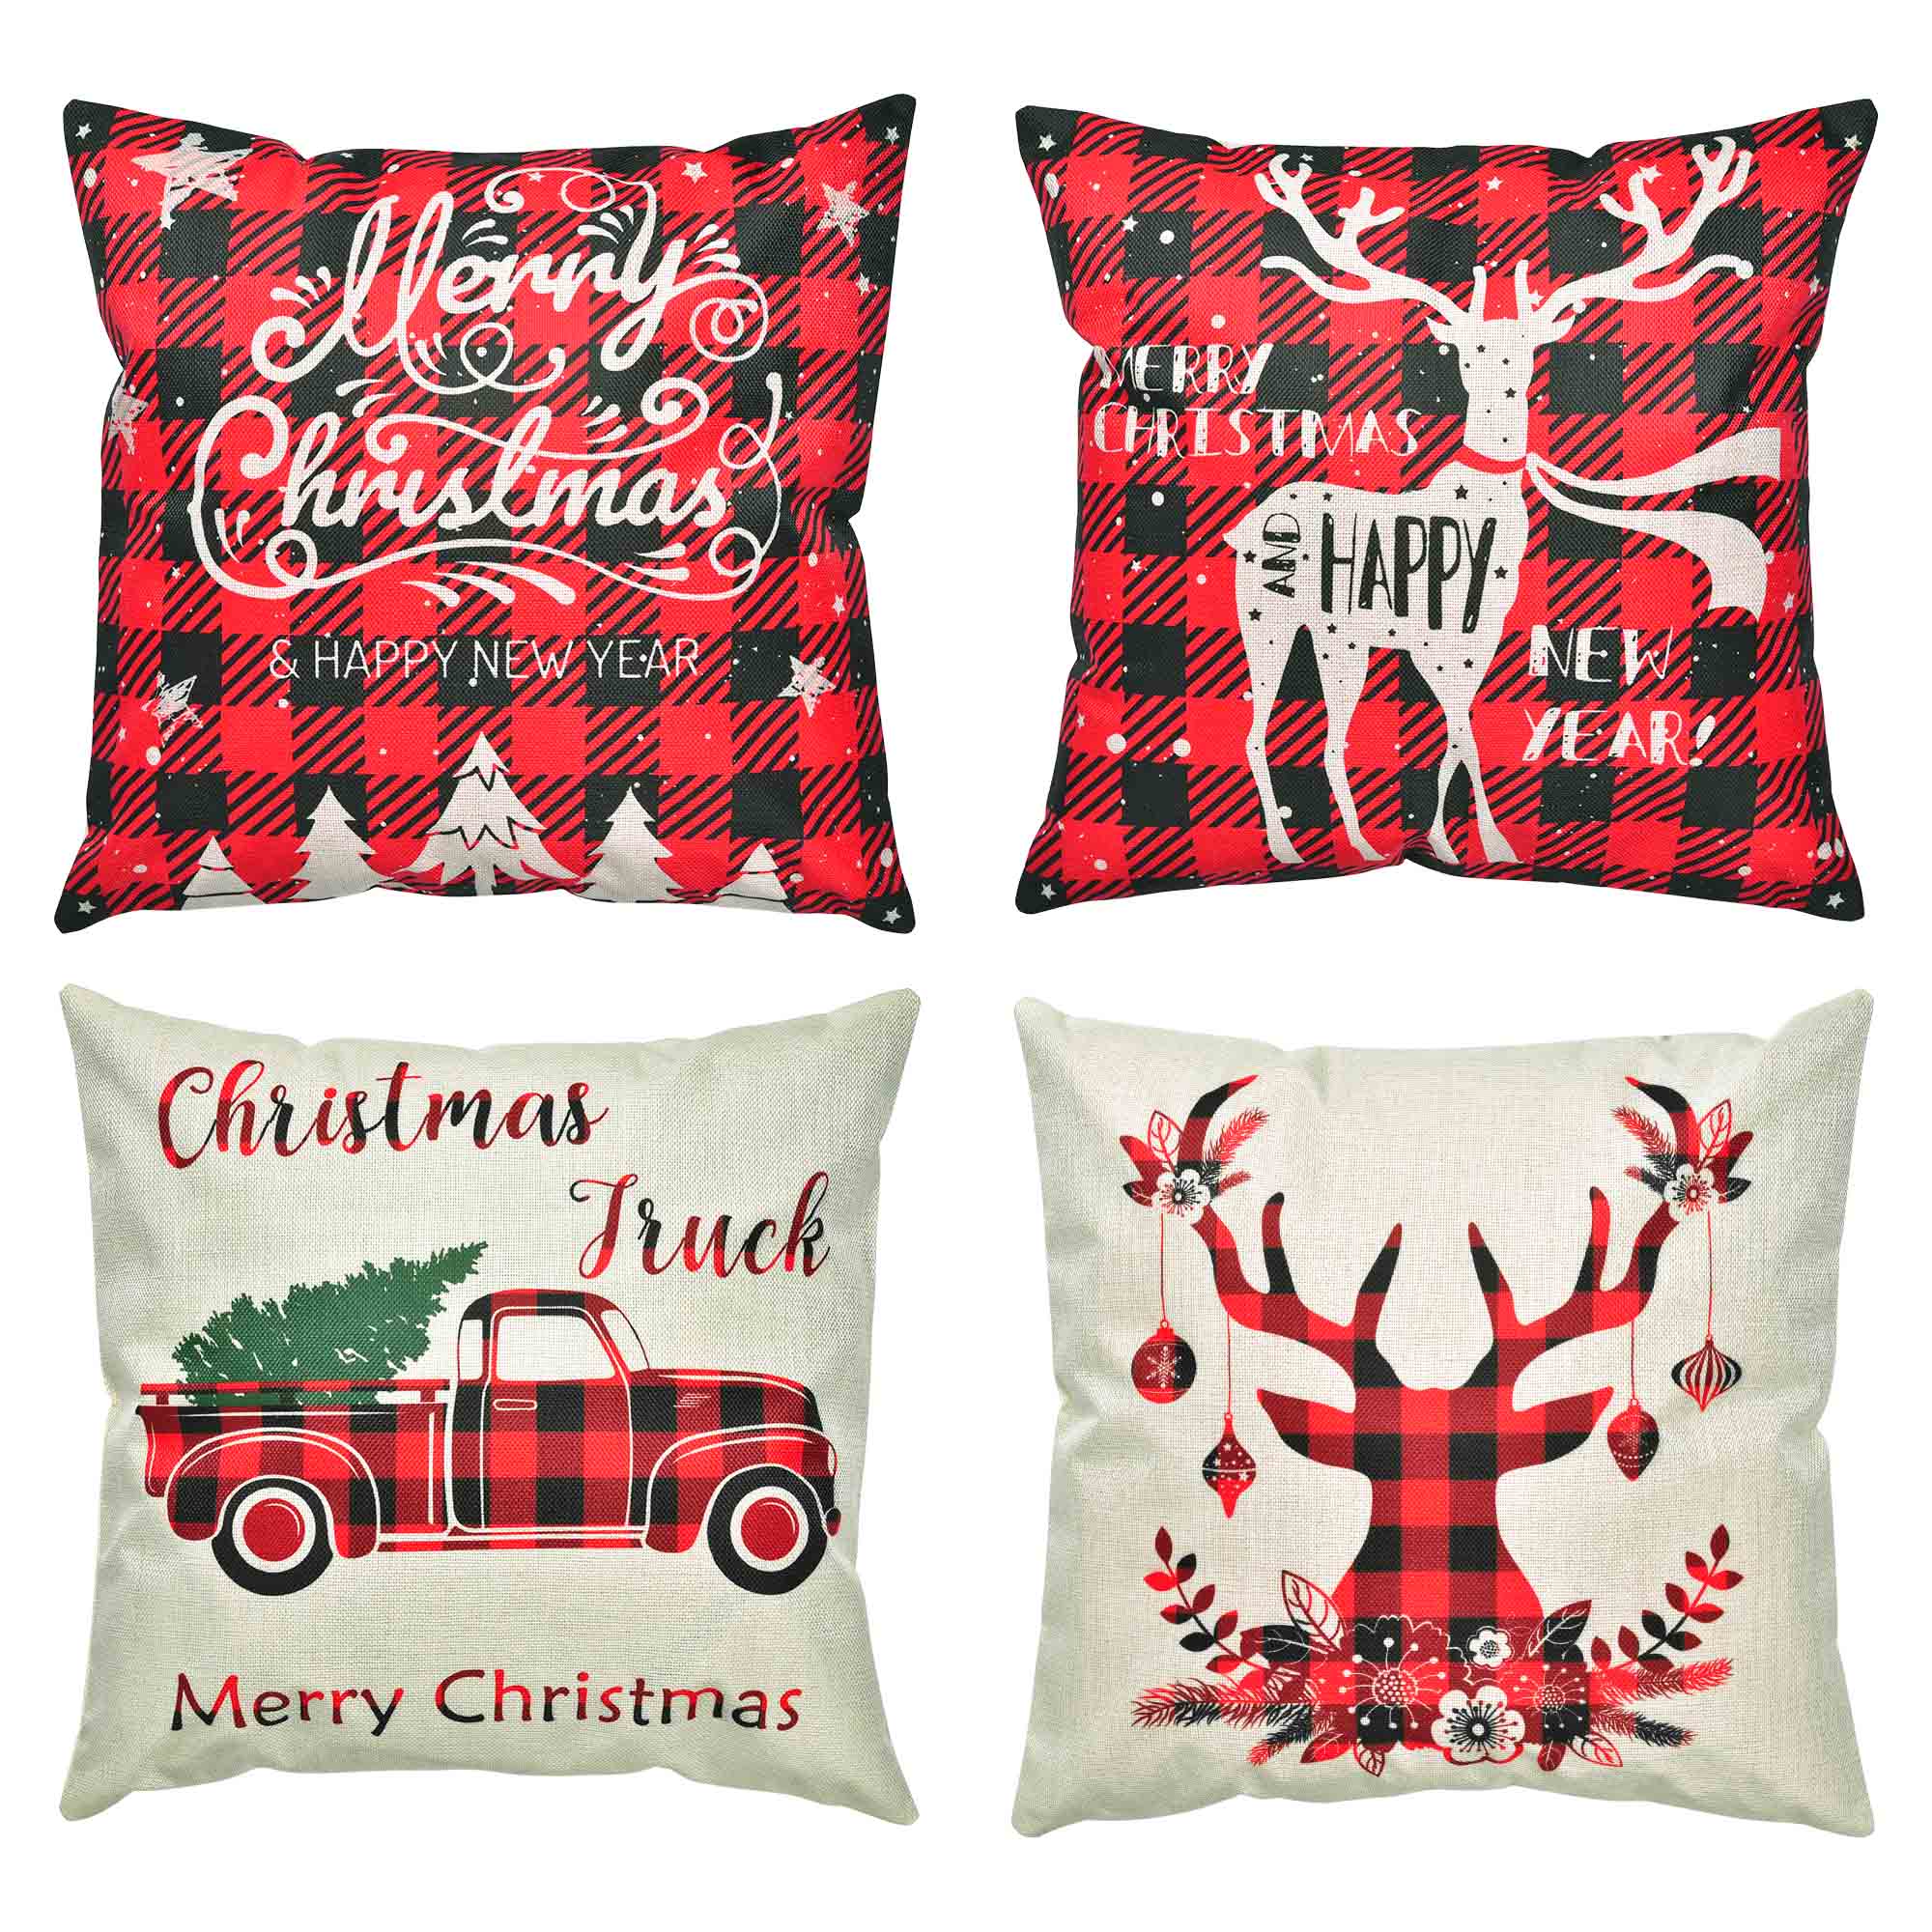 4 件装带隐藏拉链的圣诞枕套可水洗亚麻织物鹿树卡车图案方形枕头假日沙发床房子咖啡厅装饰